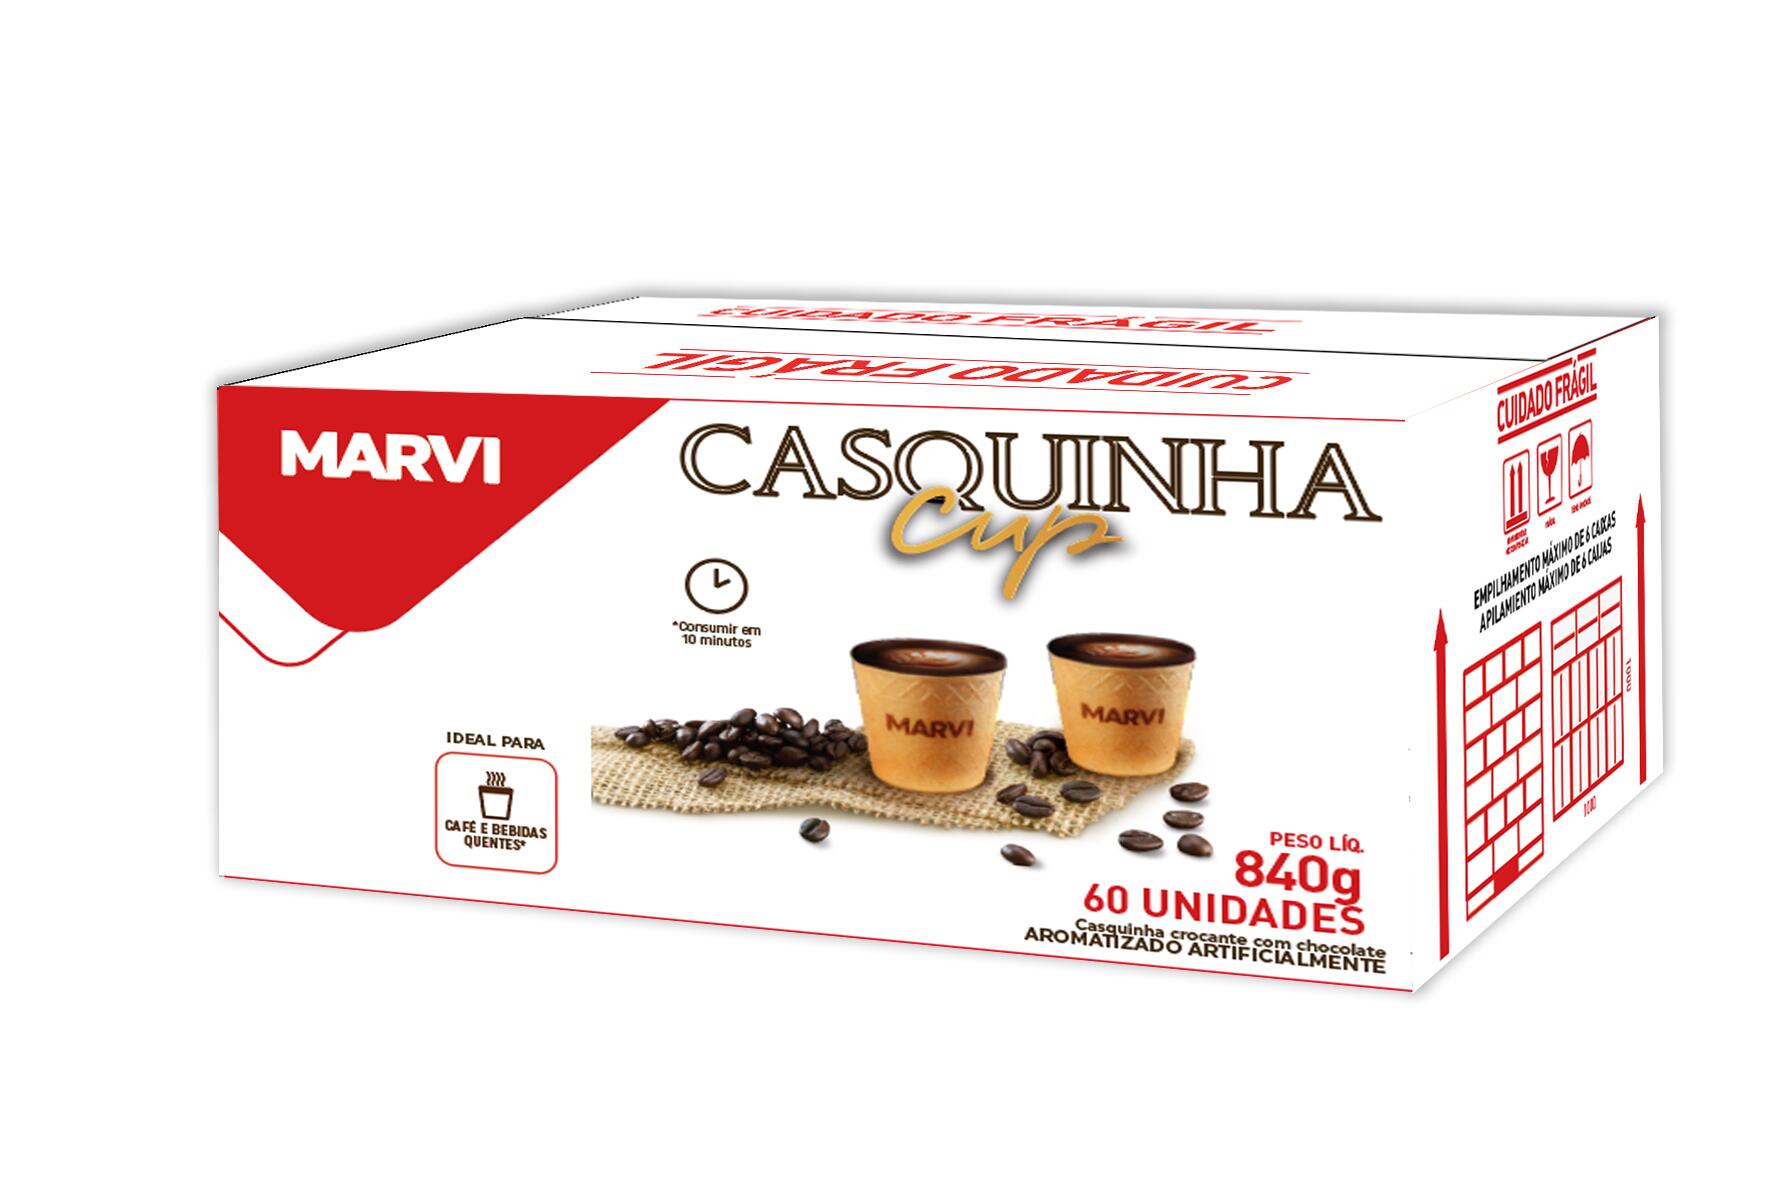 Comprar 6 Copo Comestível Copinho De Café 50ml Casquinha Cup Marvi - Gerô  Festas